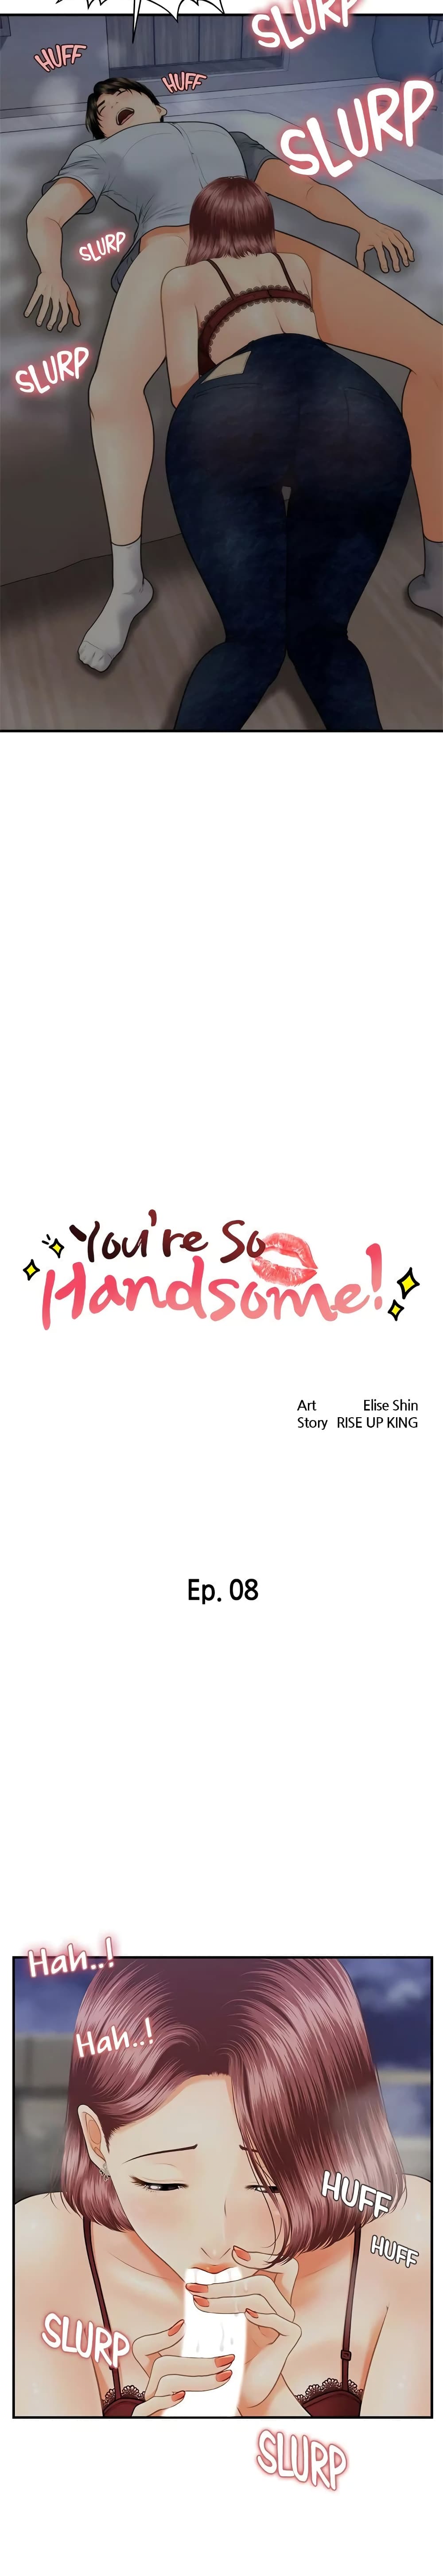 Hey, Handsome 8 02